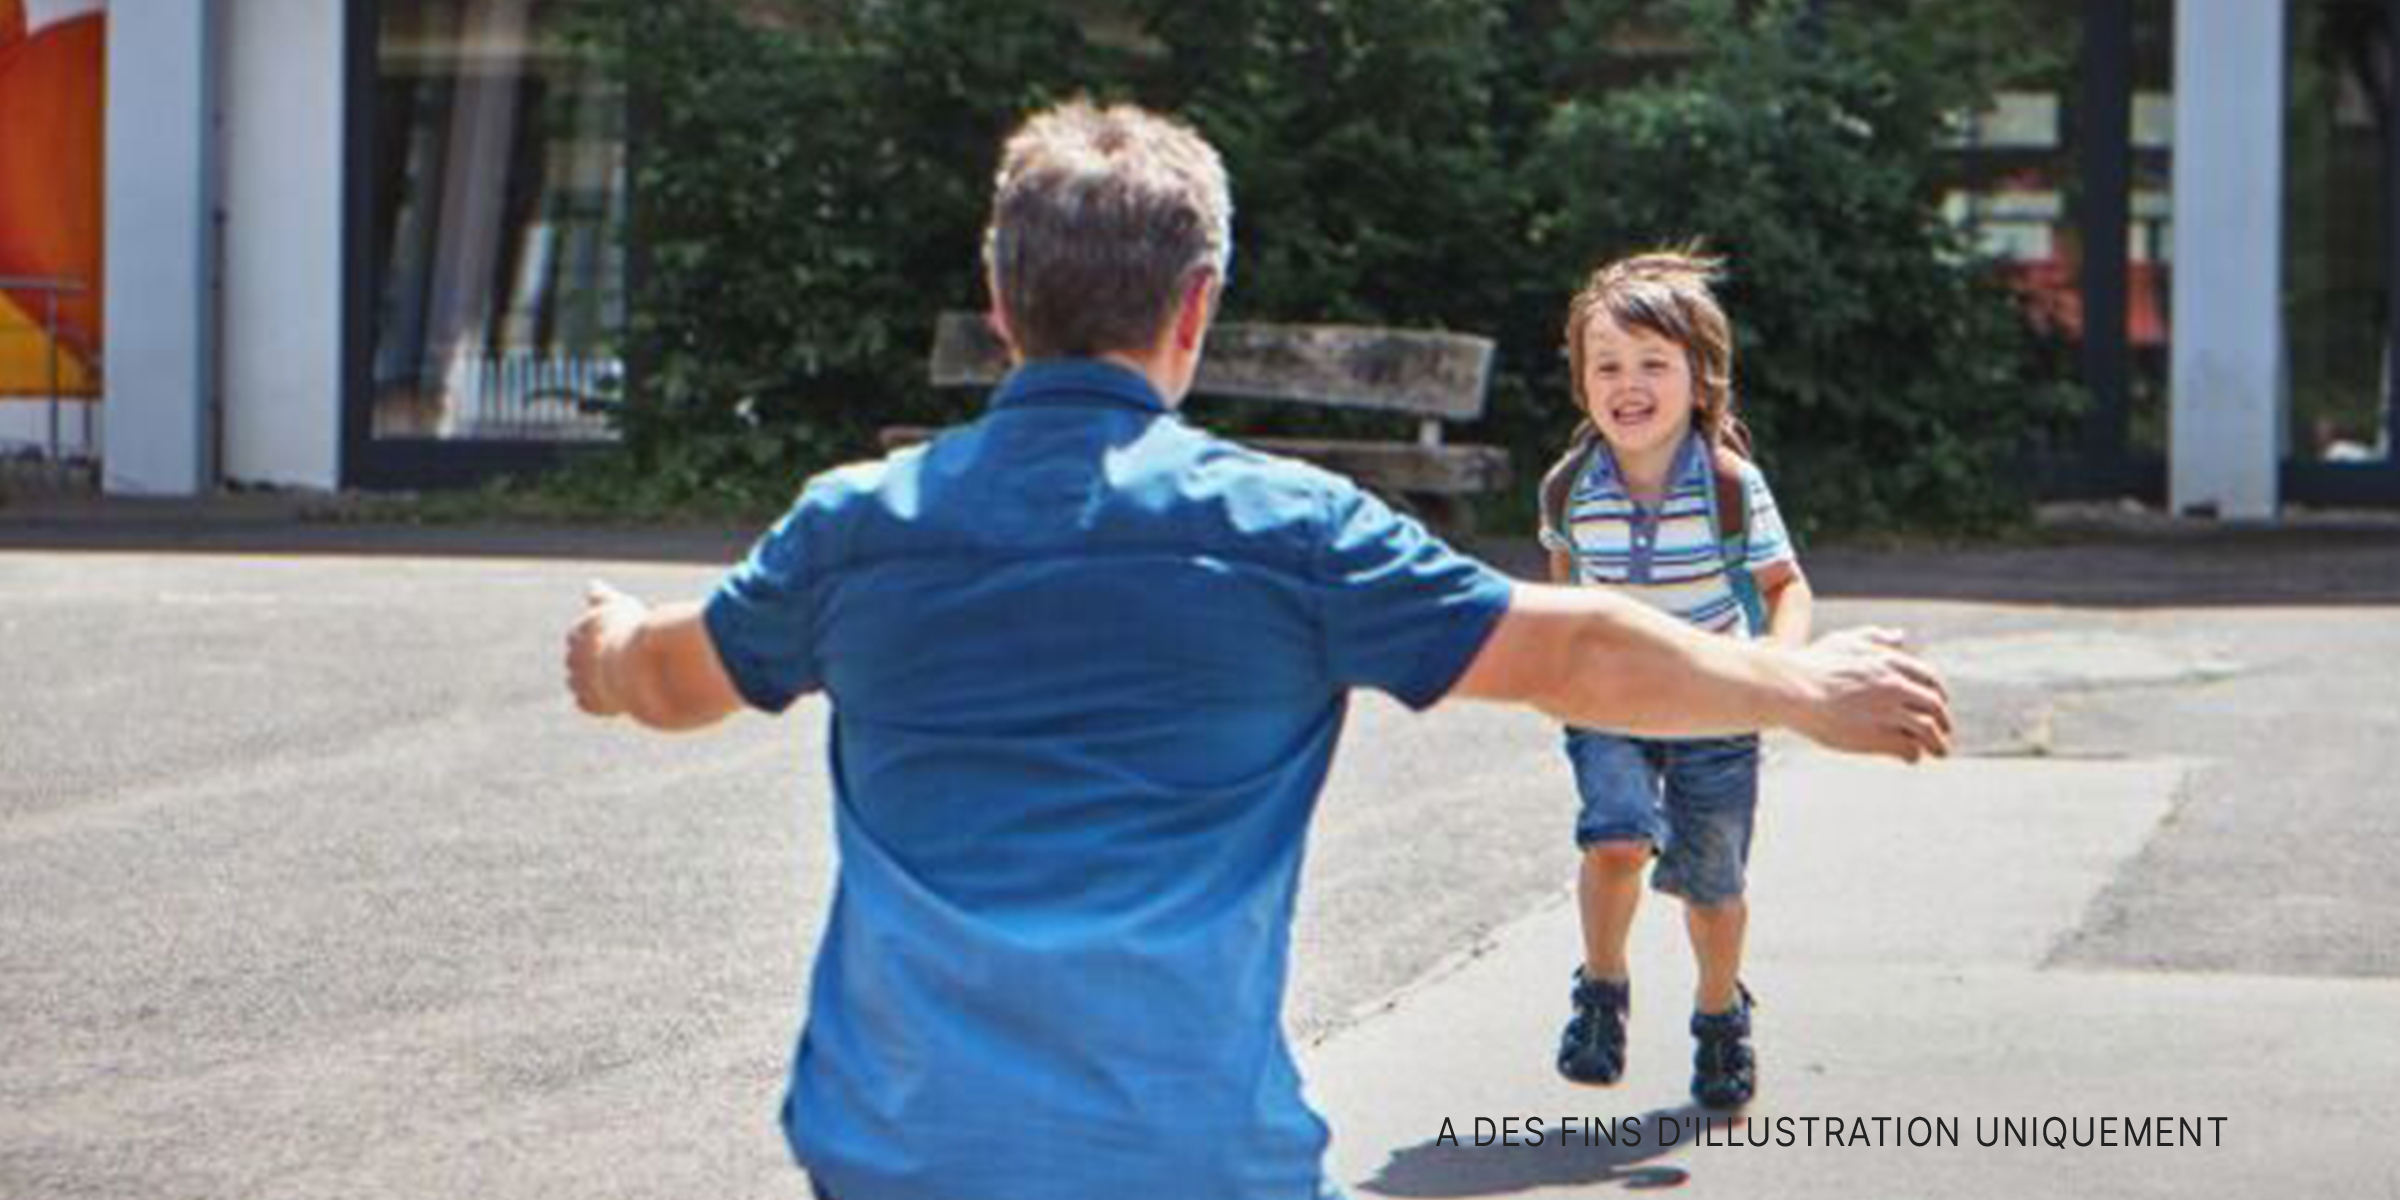 Un garçon courant dans les bras de son père. | Source : Shutterstock